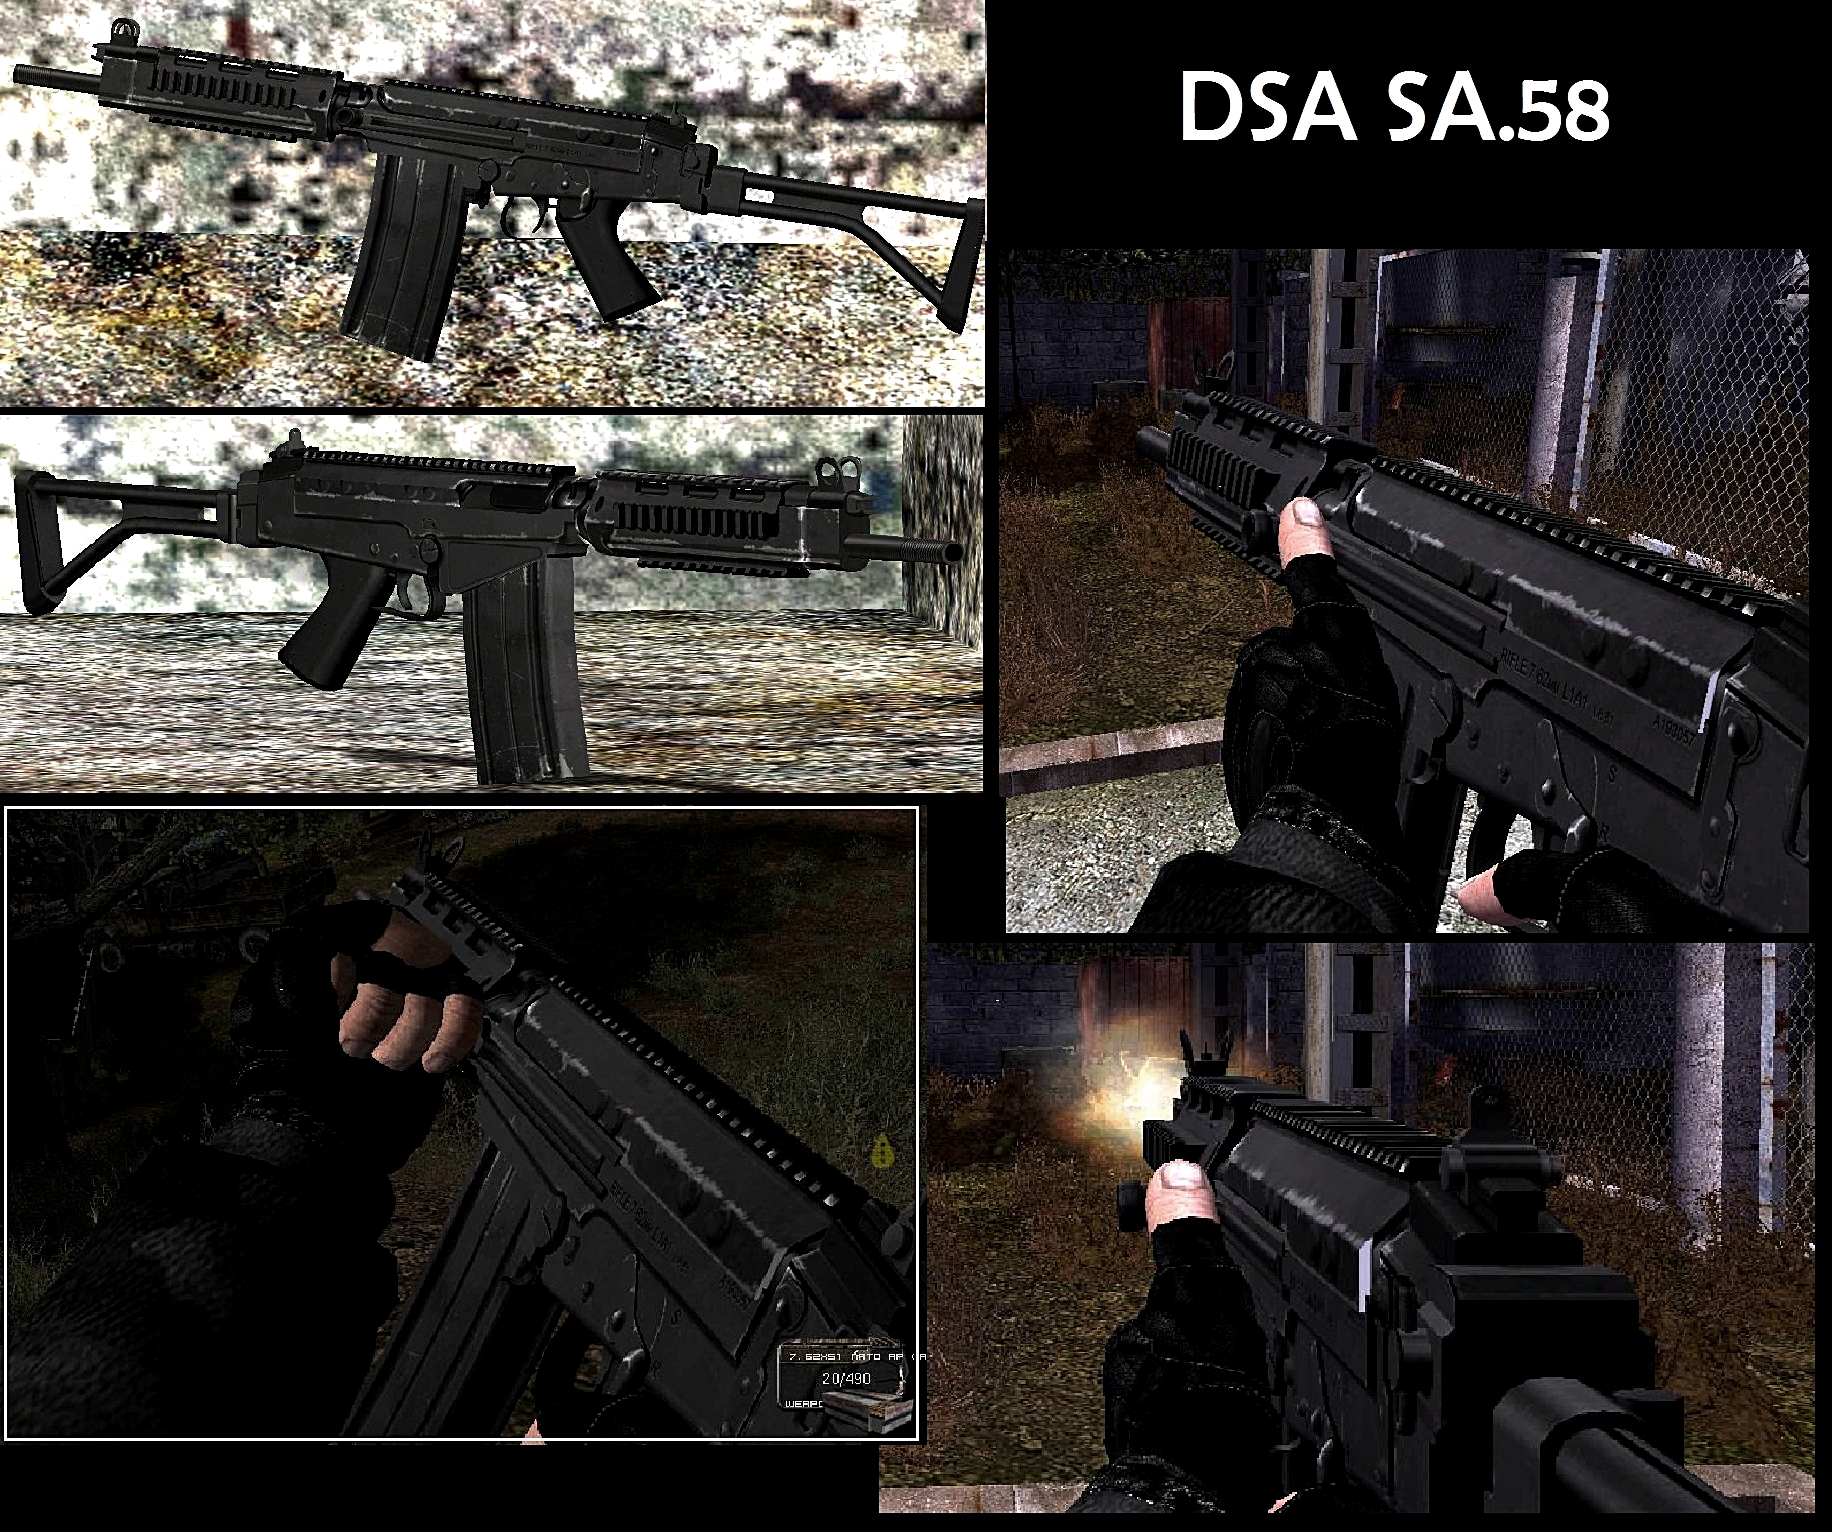 DSA SA 58